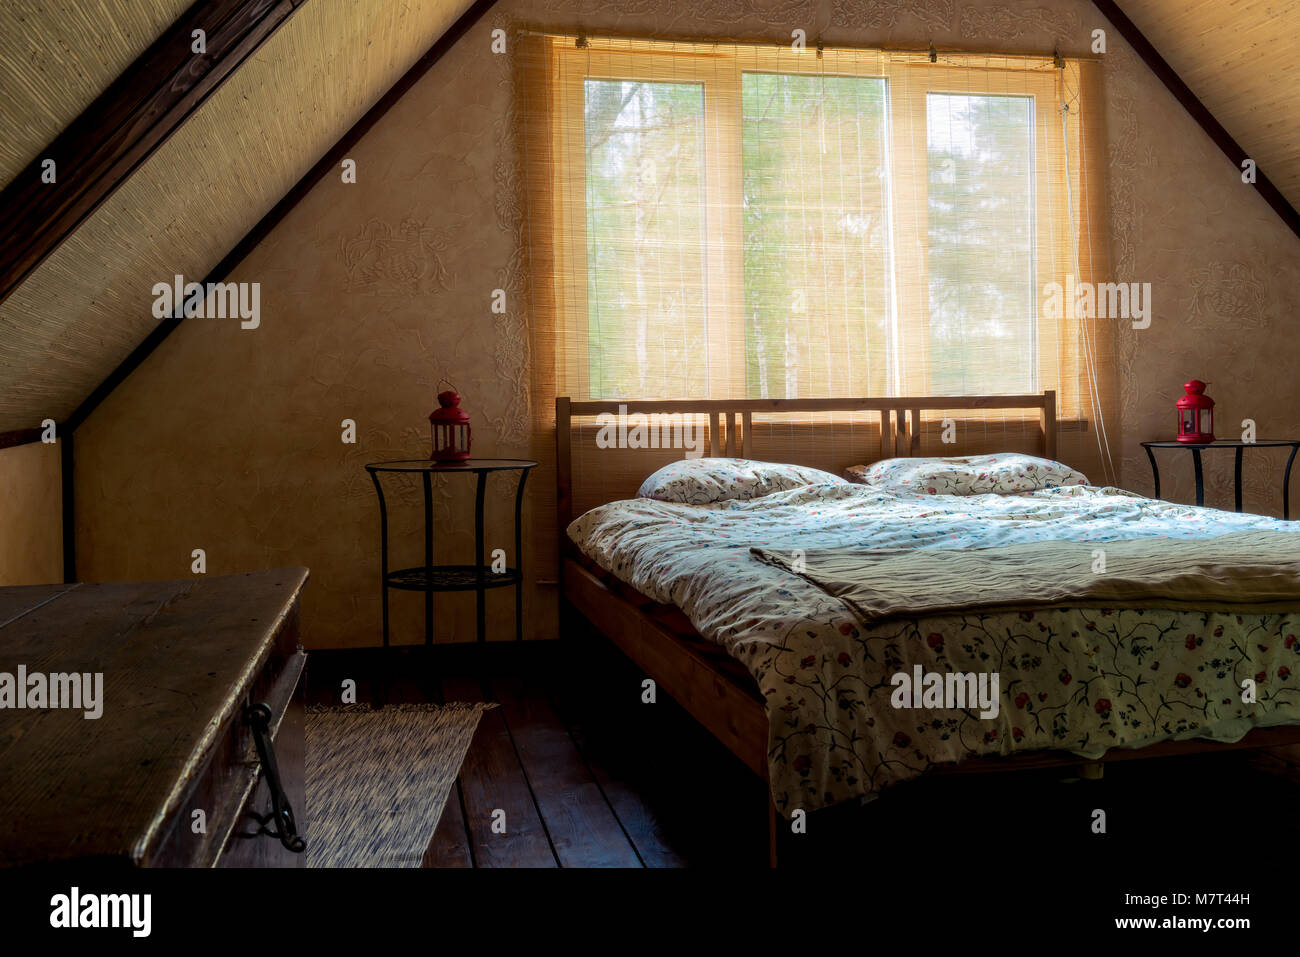 Bett in der Nähe ein Fenster in einem Zimmer auf der obersten Etage eines Hauses, unter einem Dach Stockfoto